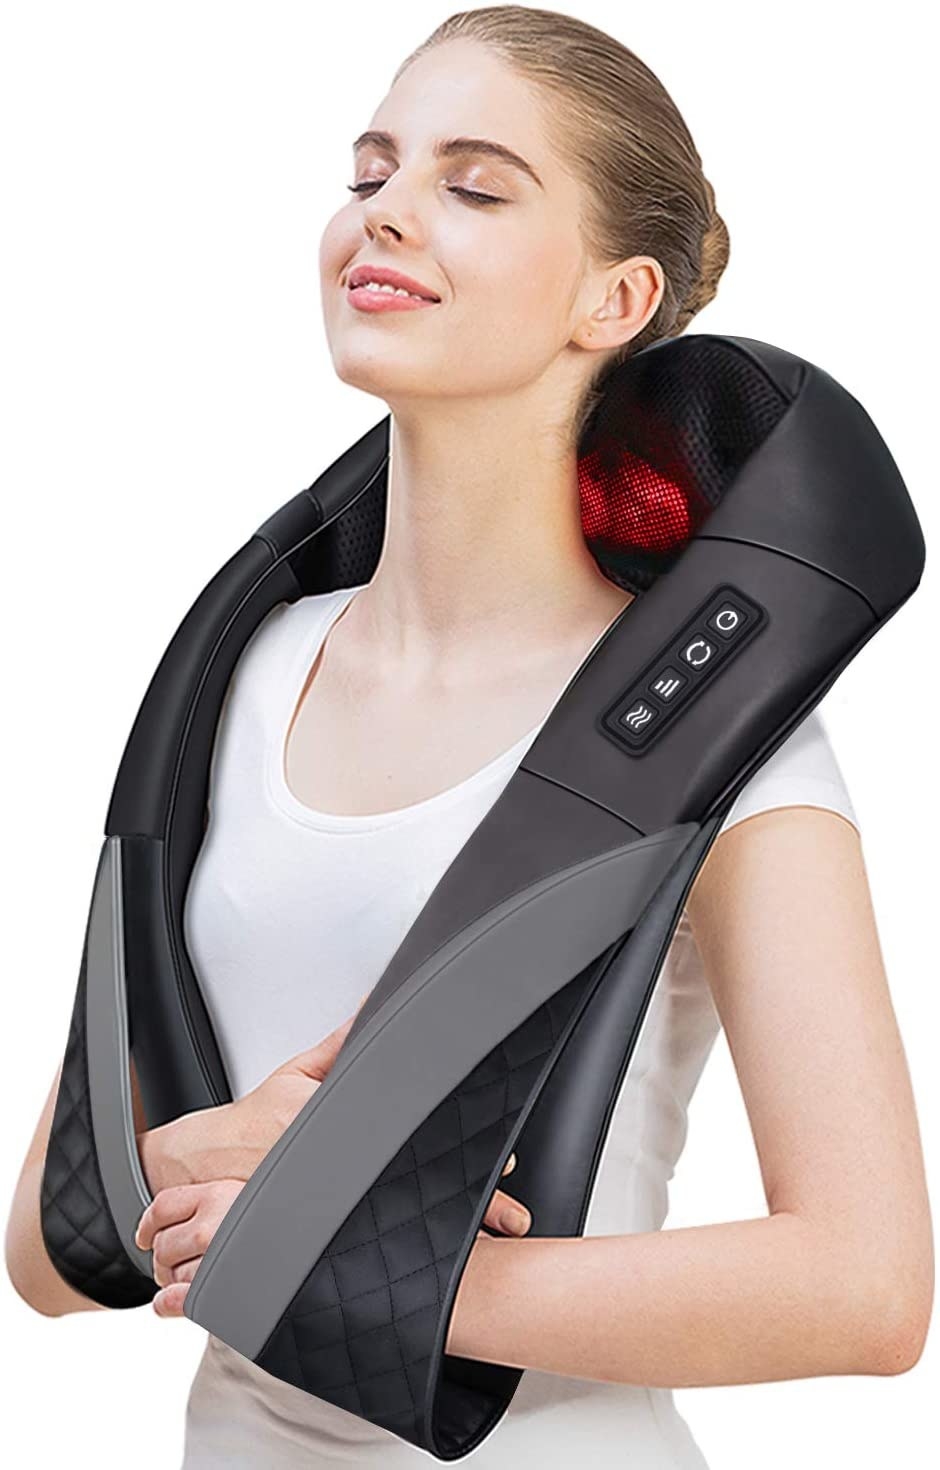 model wearing massager around neck